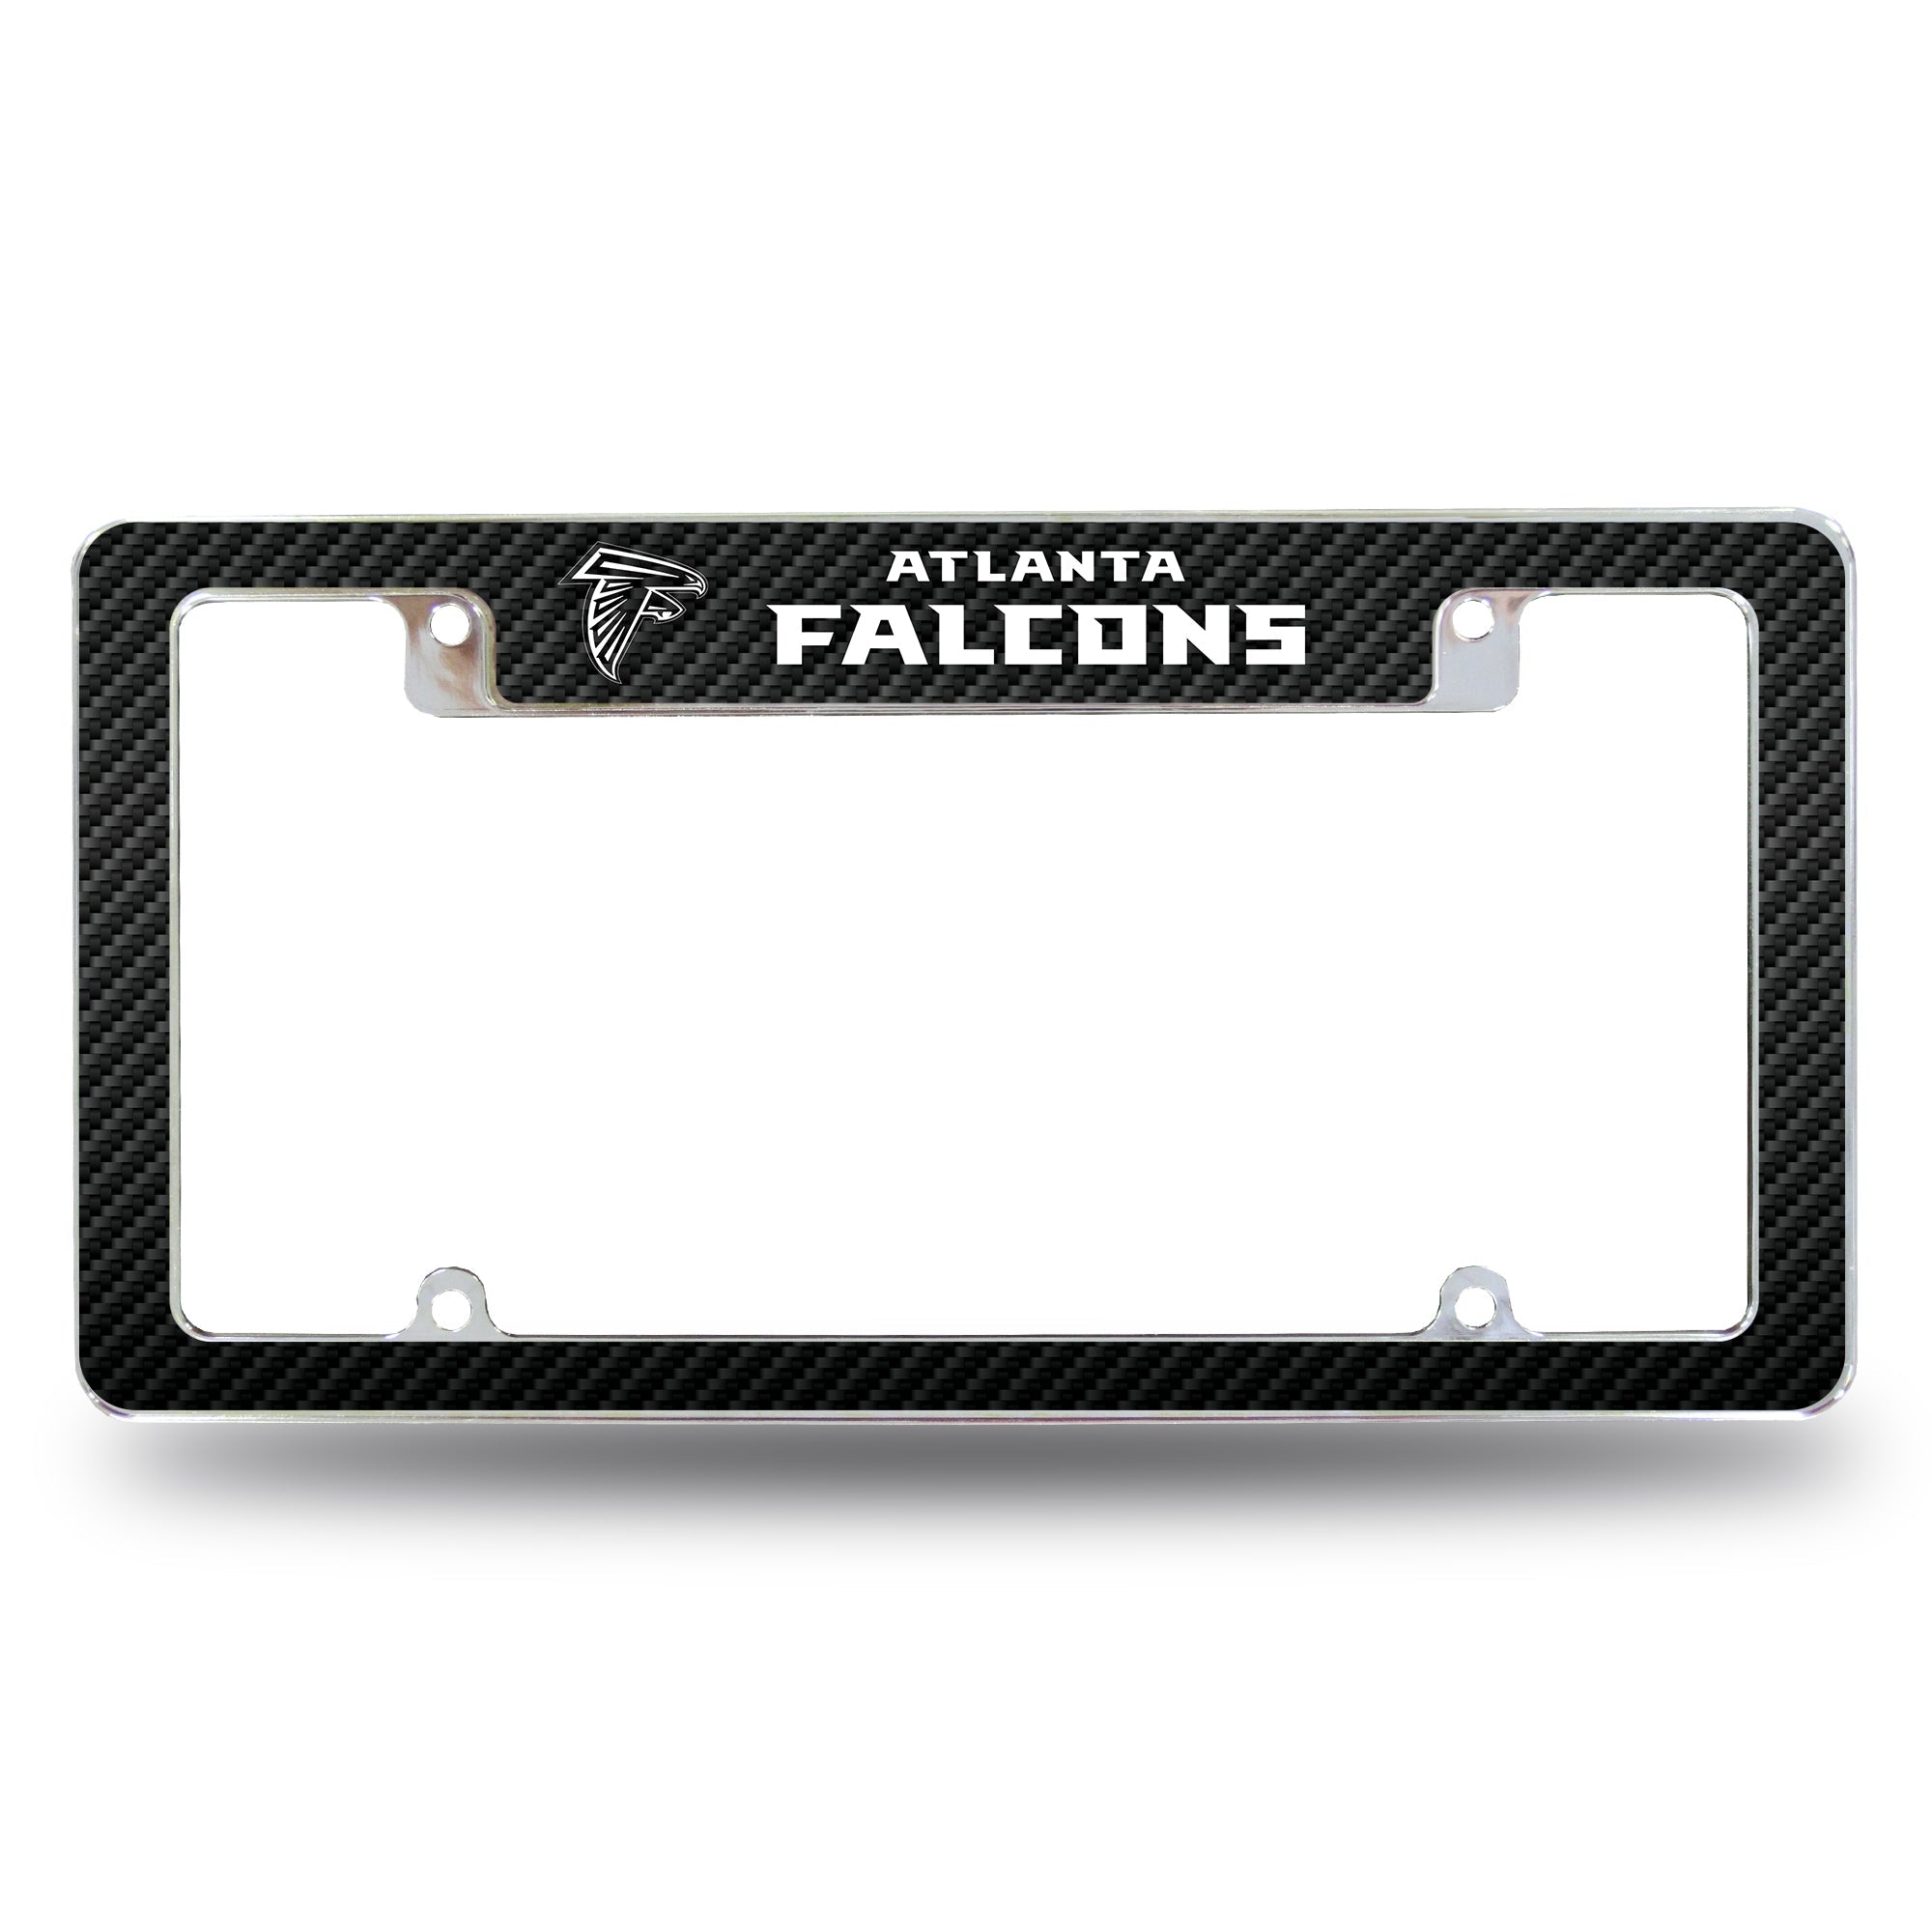 Atlanta Falcons All Over 12 x 6 Chrome Frame - Carbon Fiber Design